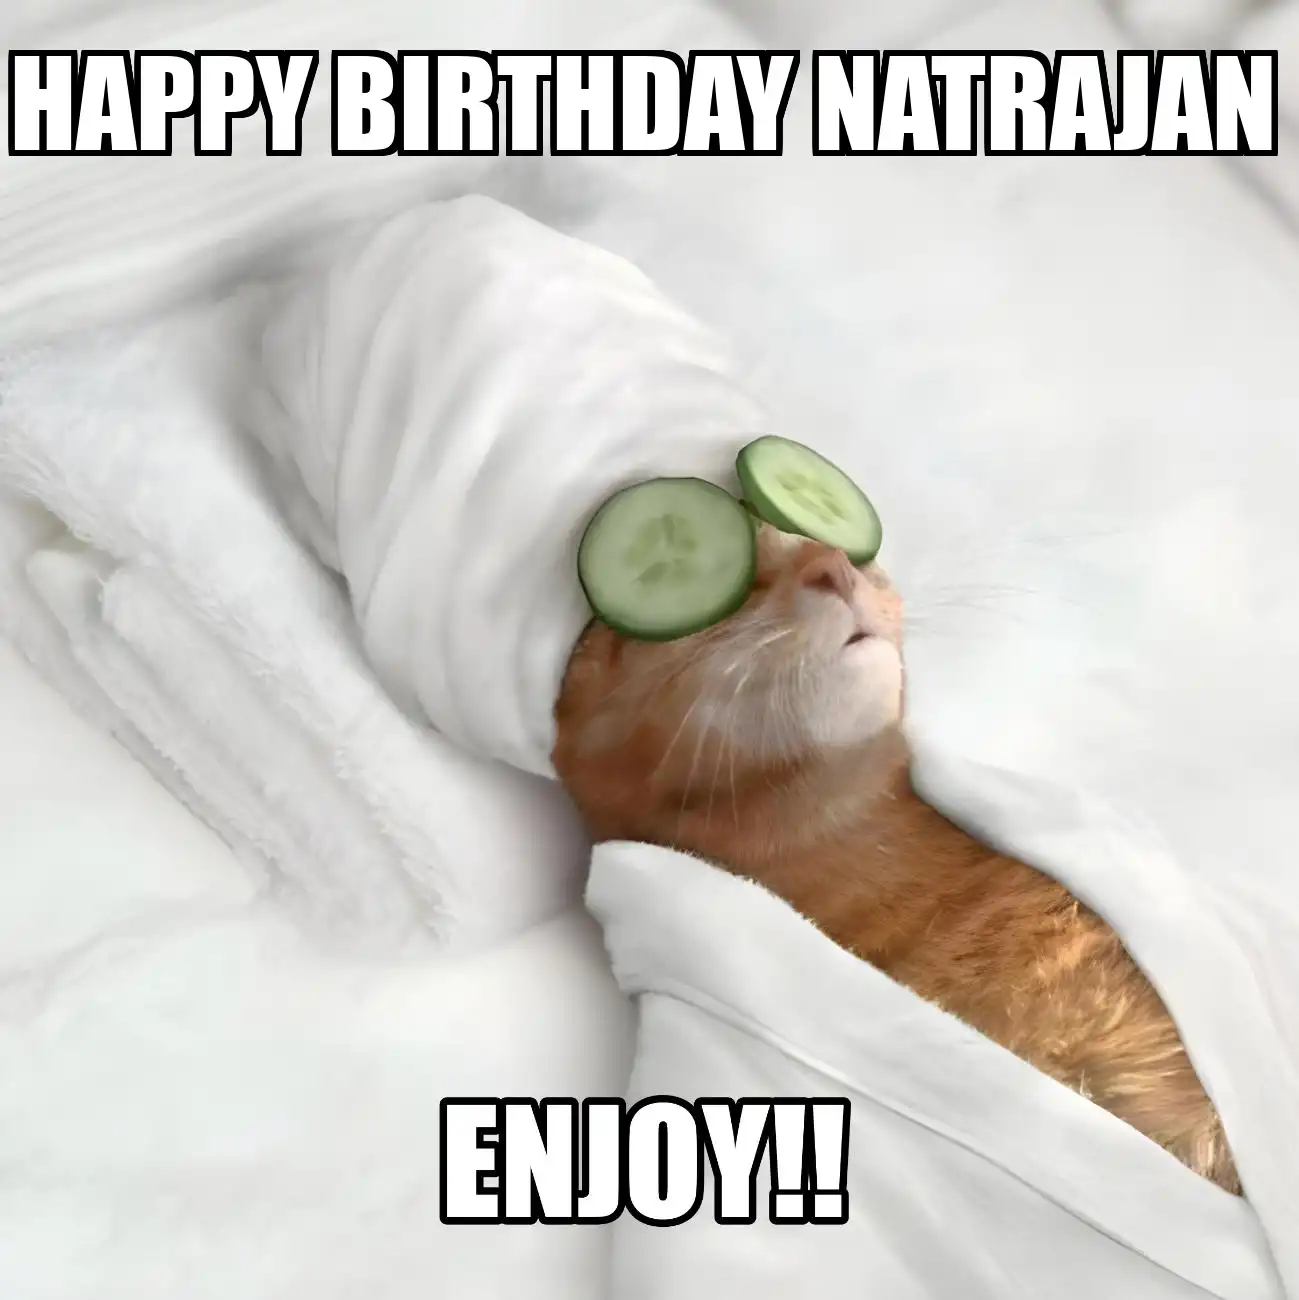 Happy Birthday Natrajan Enjoy Cat Meme